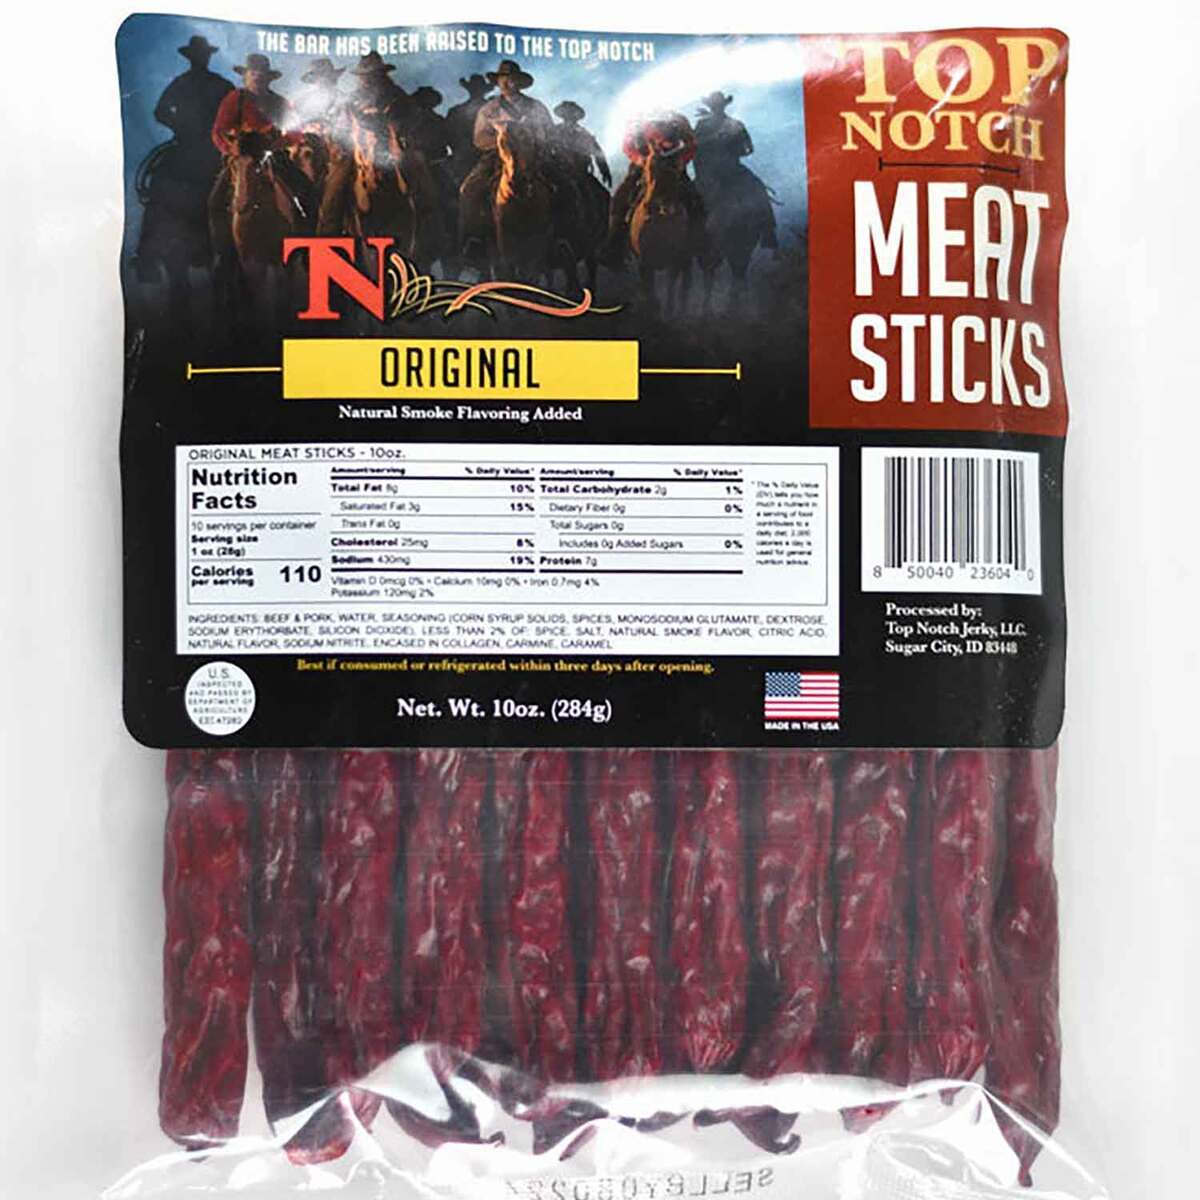 Top Notch Meat Sticks Original Beef Sticks - 10oz